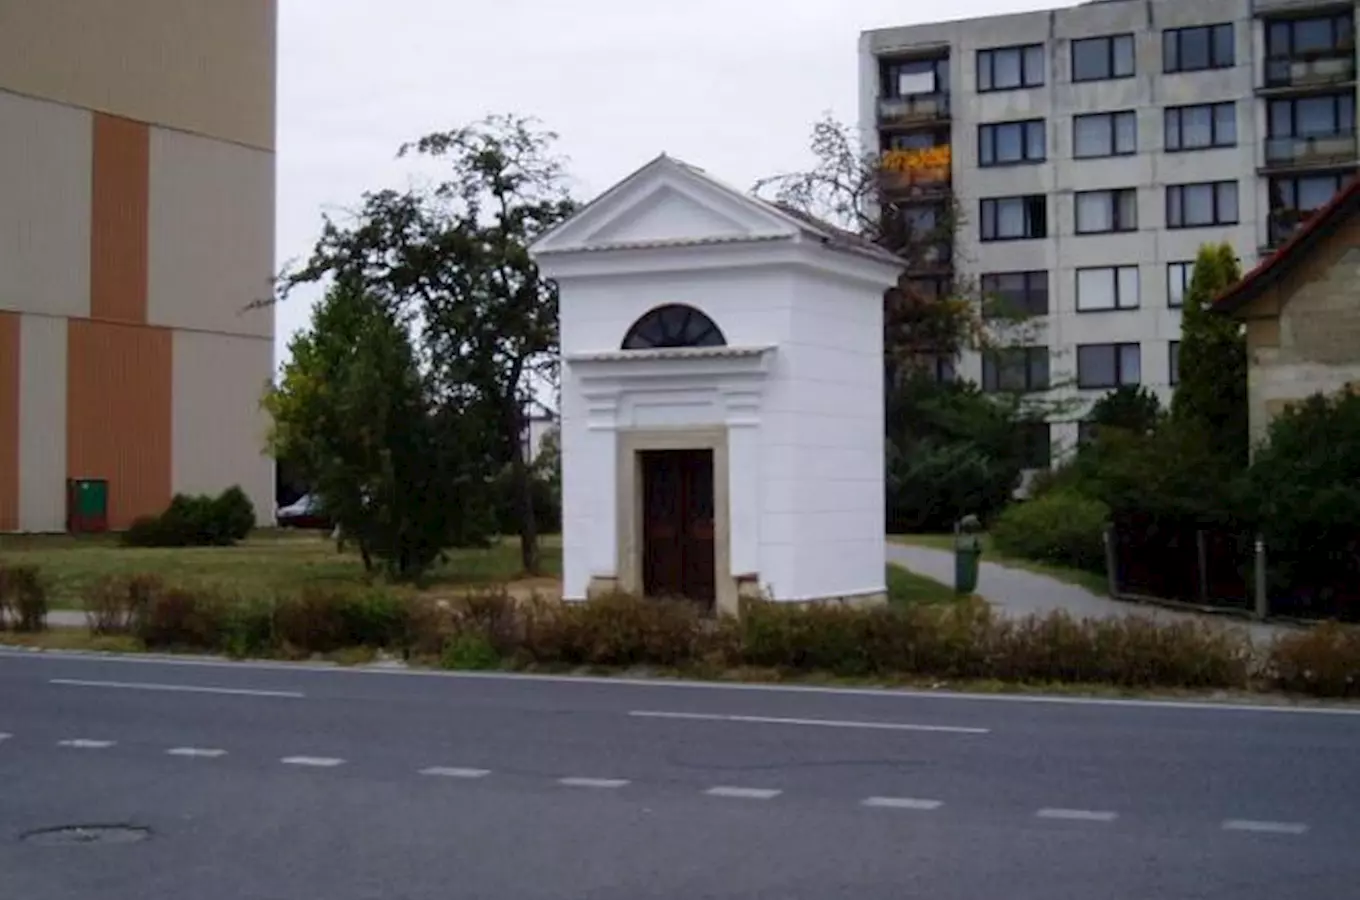  Kaple Nejsvětější Trojice v Bělé pod Bezdězem 